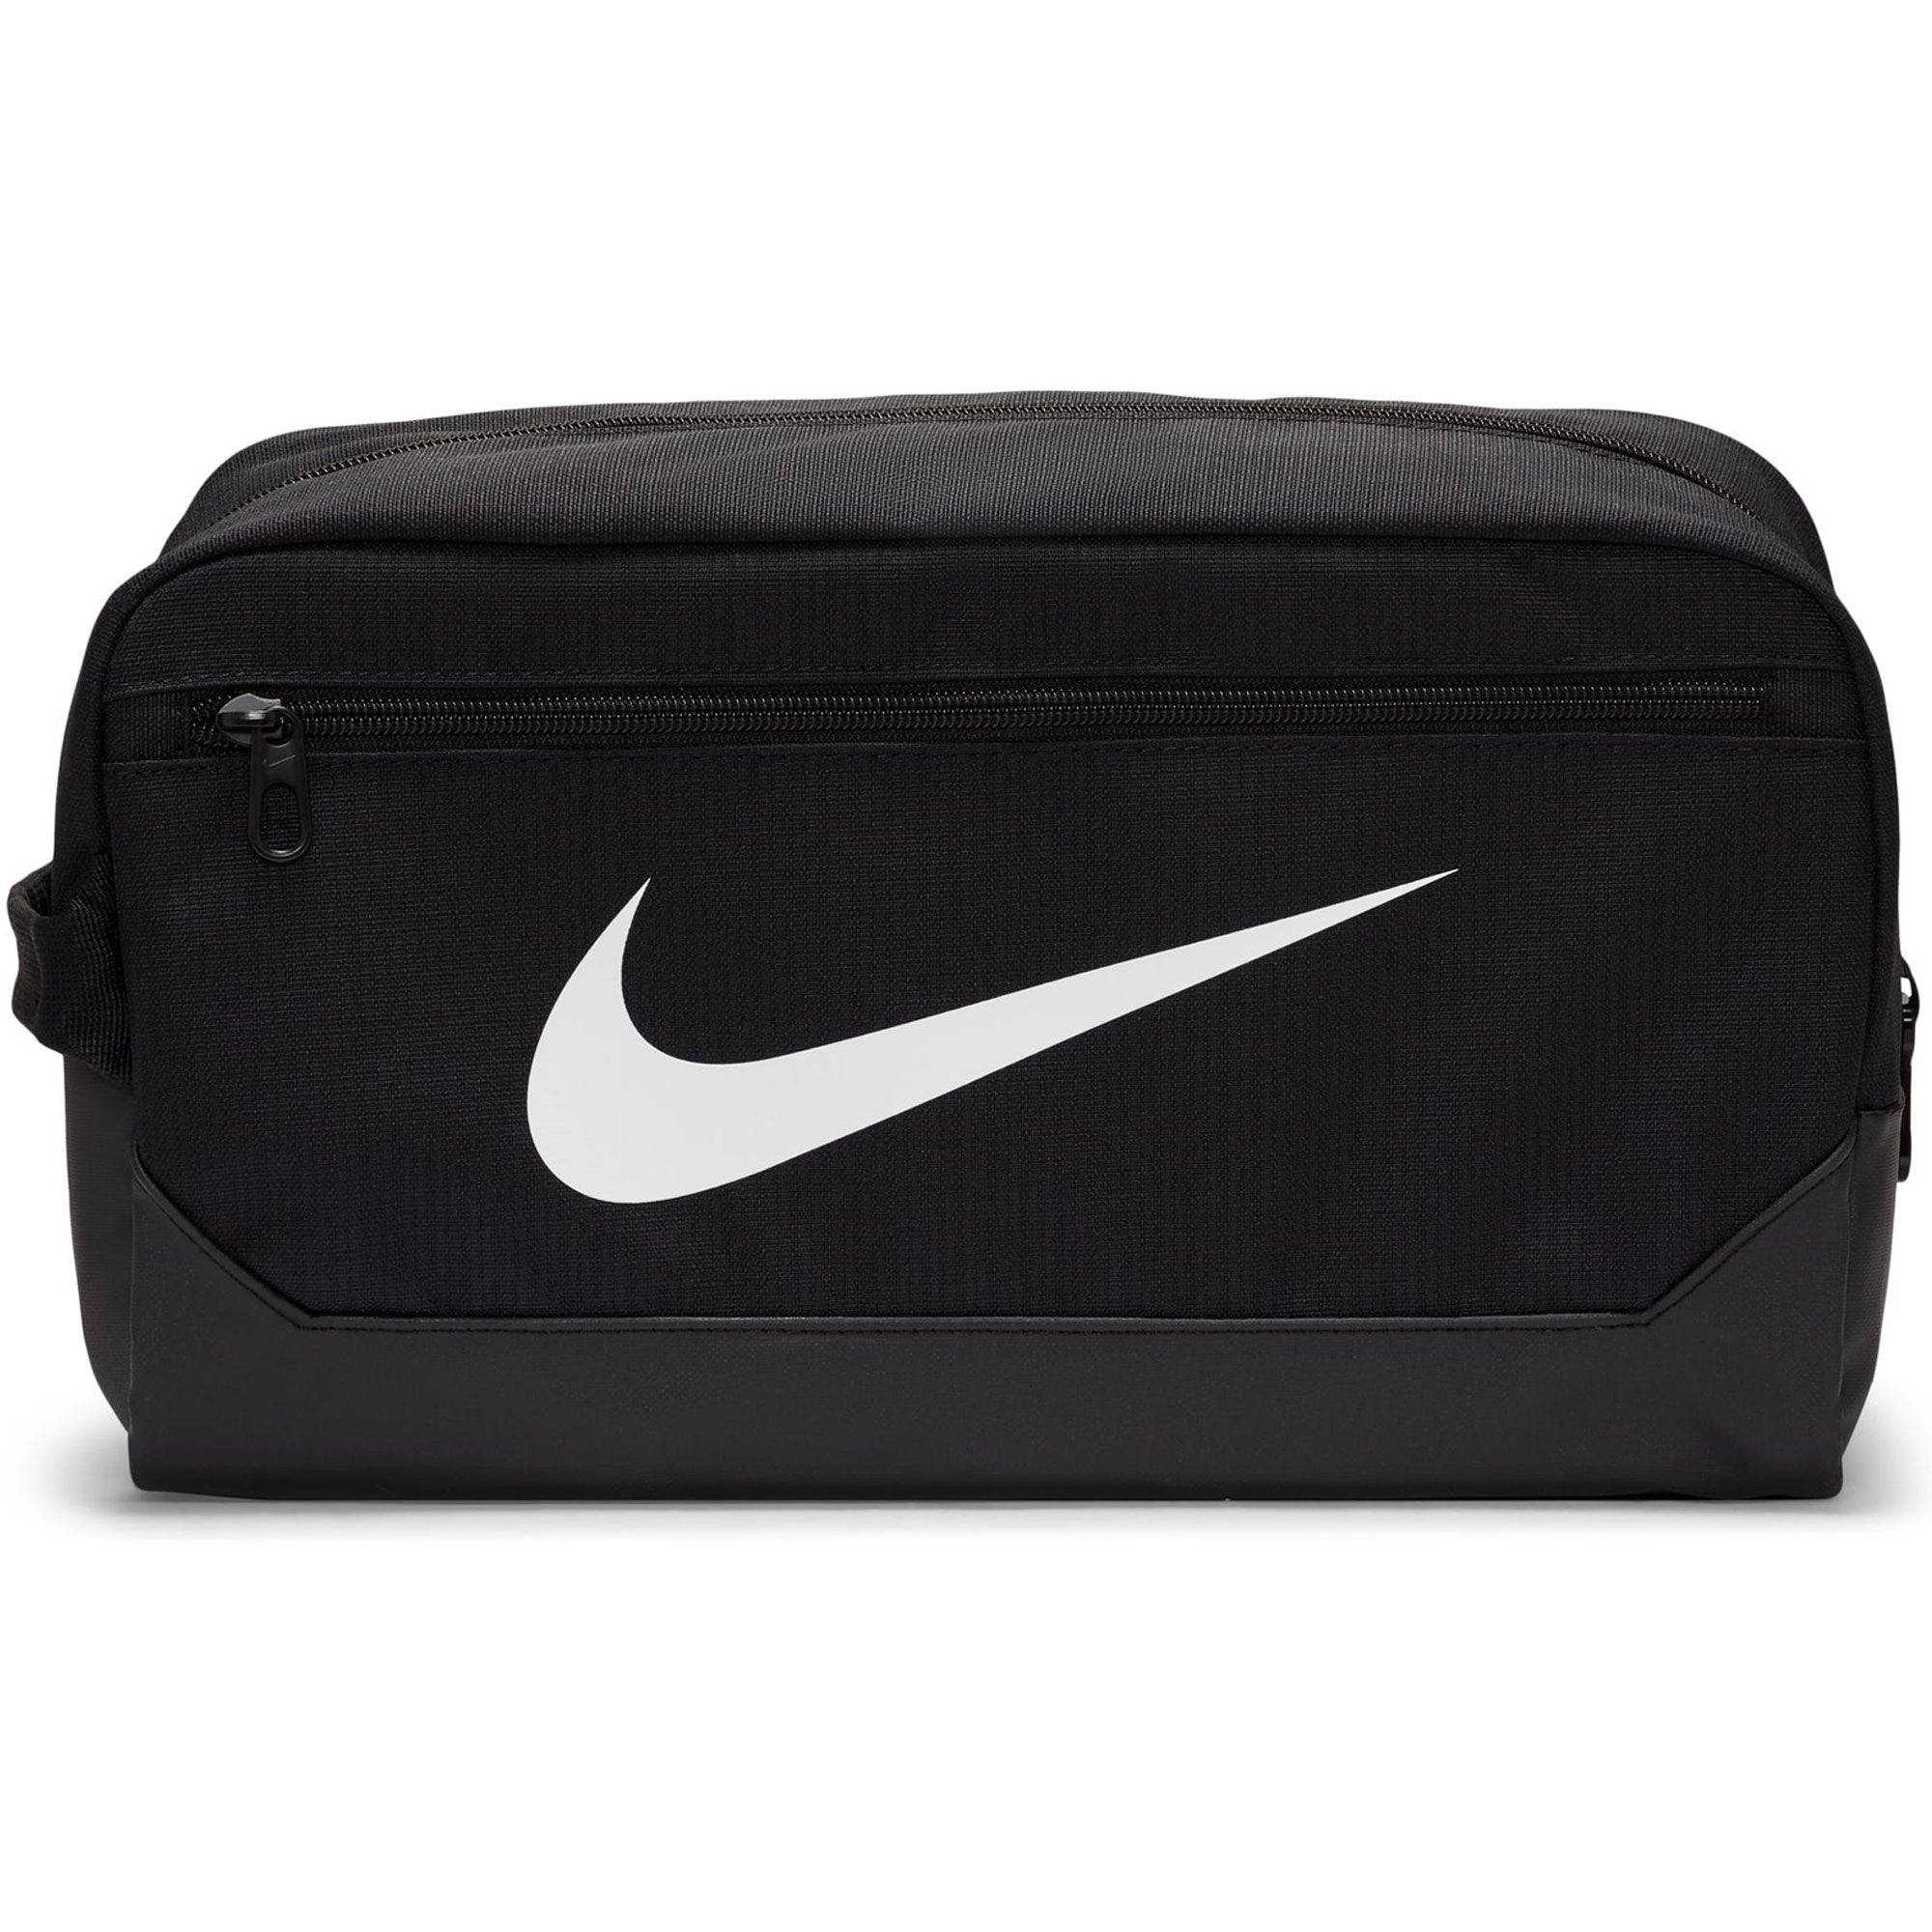 Nike Brasilia 9.5 Shoe Bag Black/White Azteca Soccer